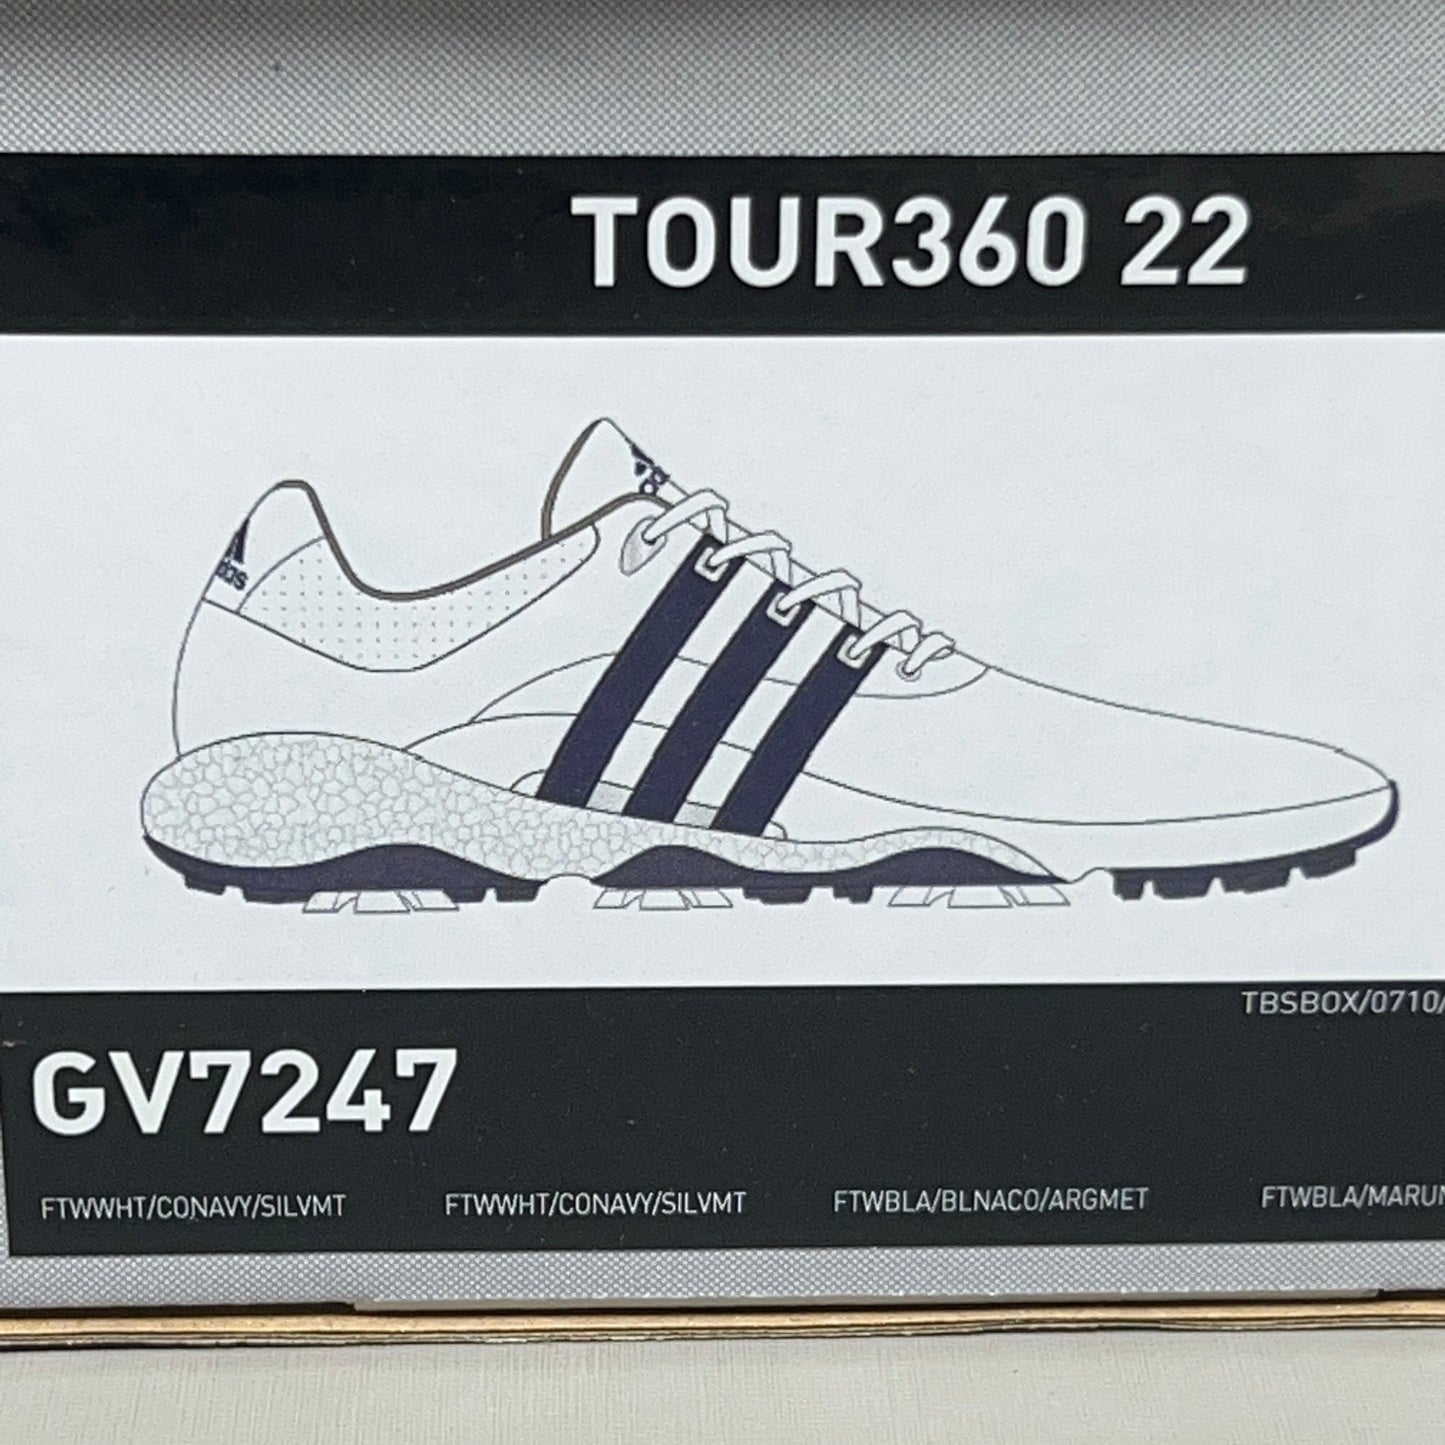 ADIDAS Golf Shoes TOUR360 22 Leather Men's Sz 15 White / Navy / Silver GV7247 (New)